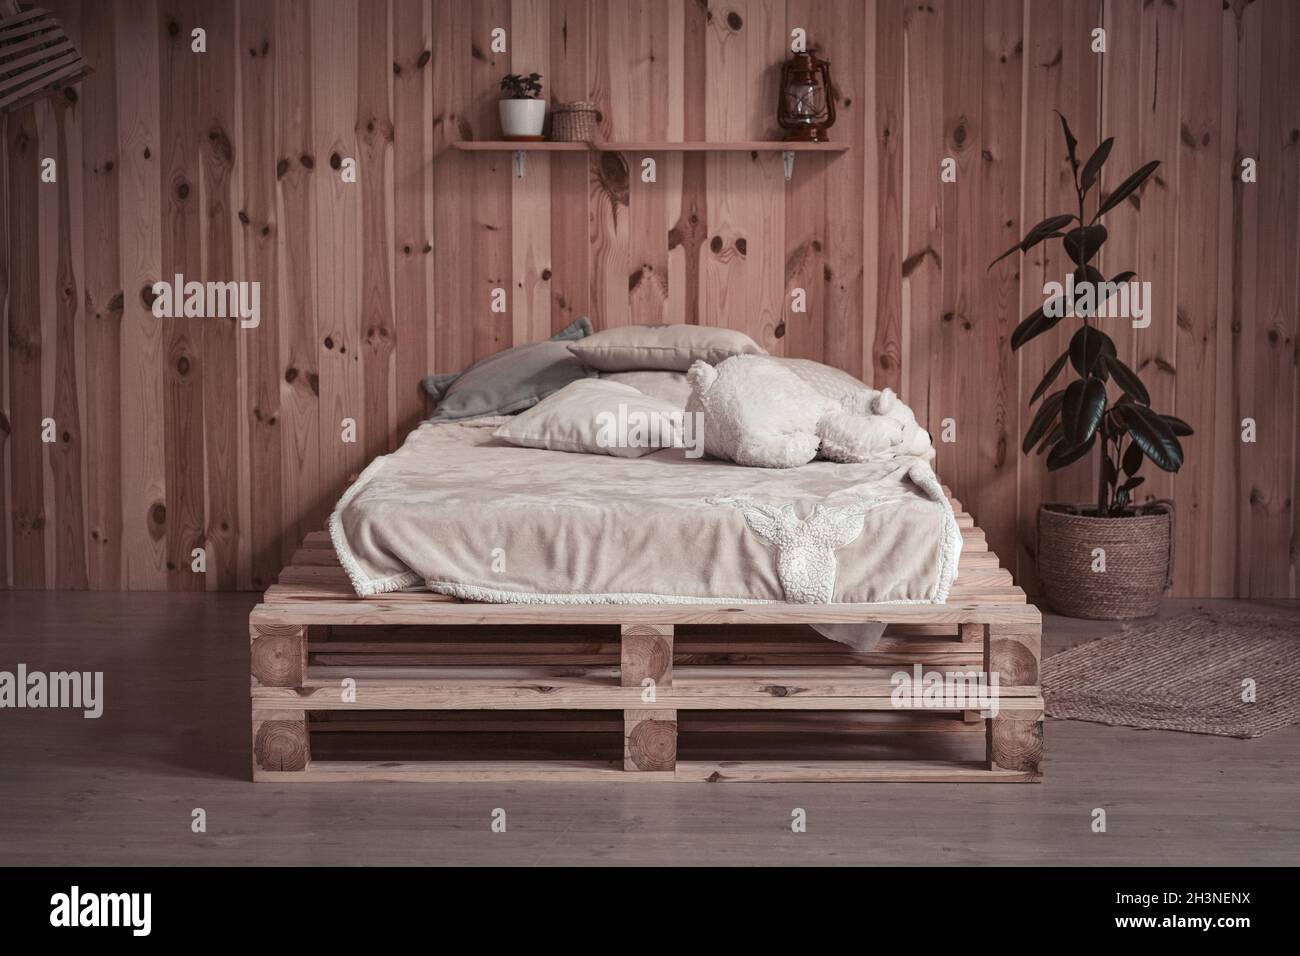 Lit simple et confortable dans un appartement en bois. Vue avant. Endroit confortable ou espace de repos Banque D'Images